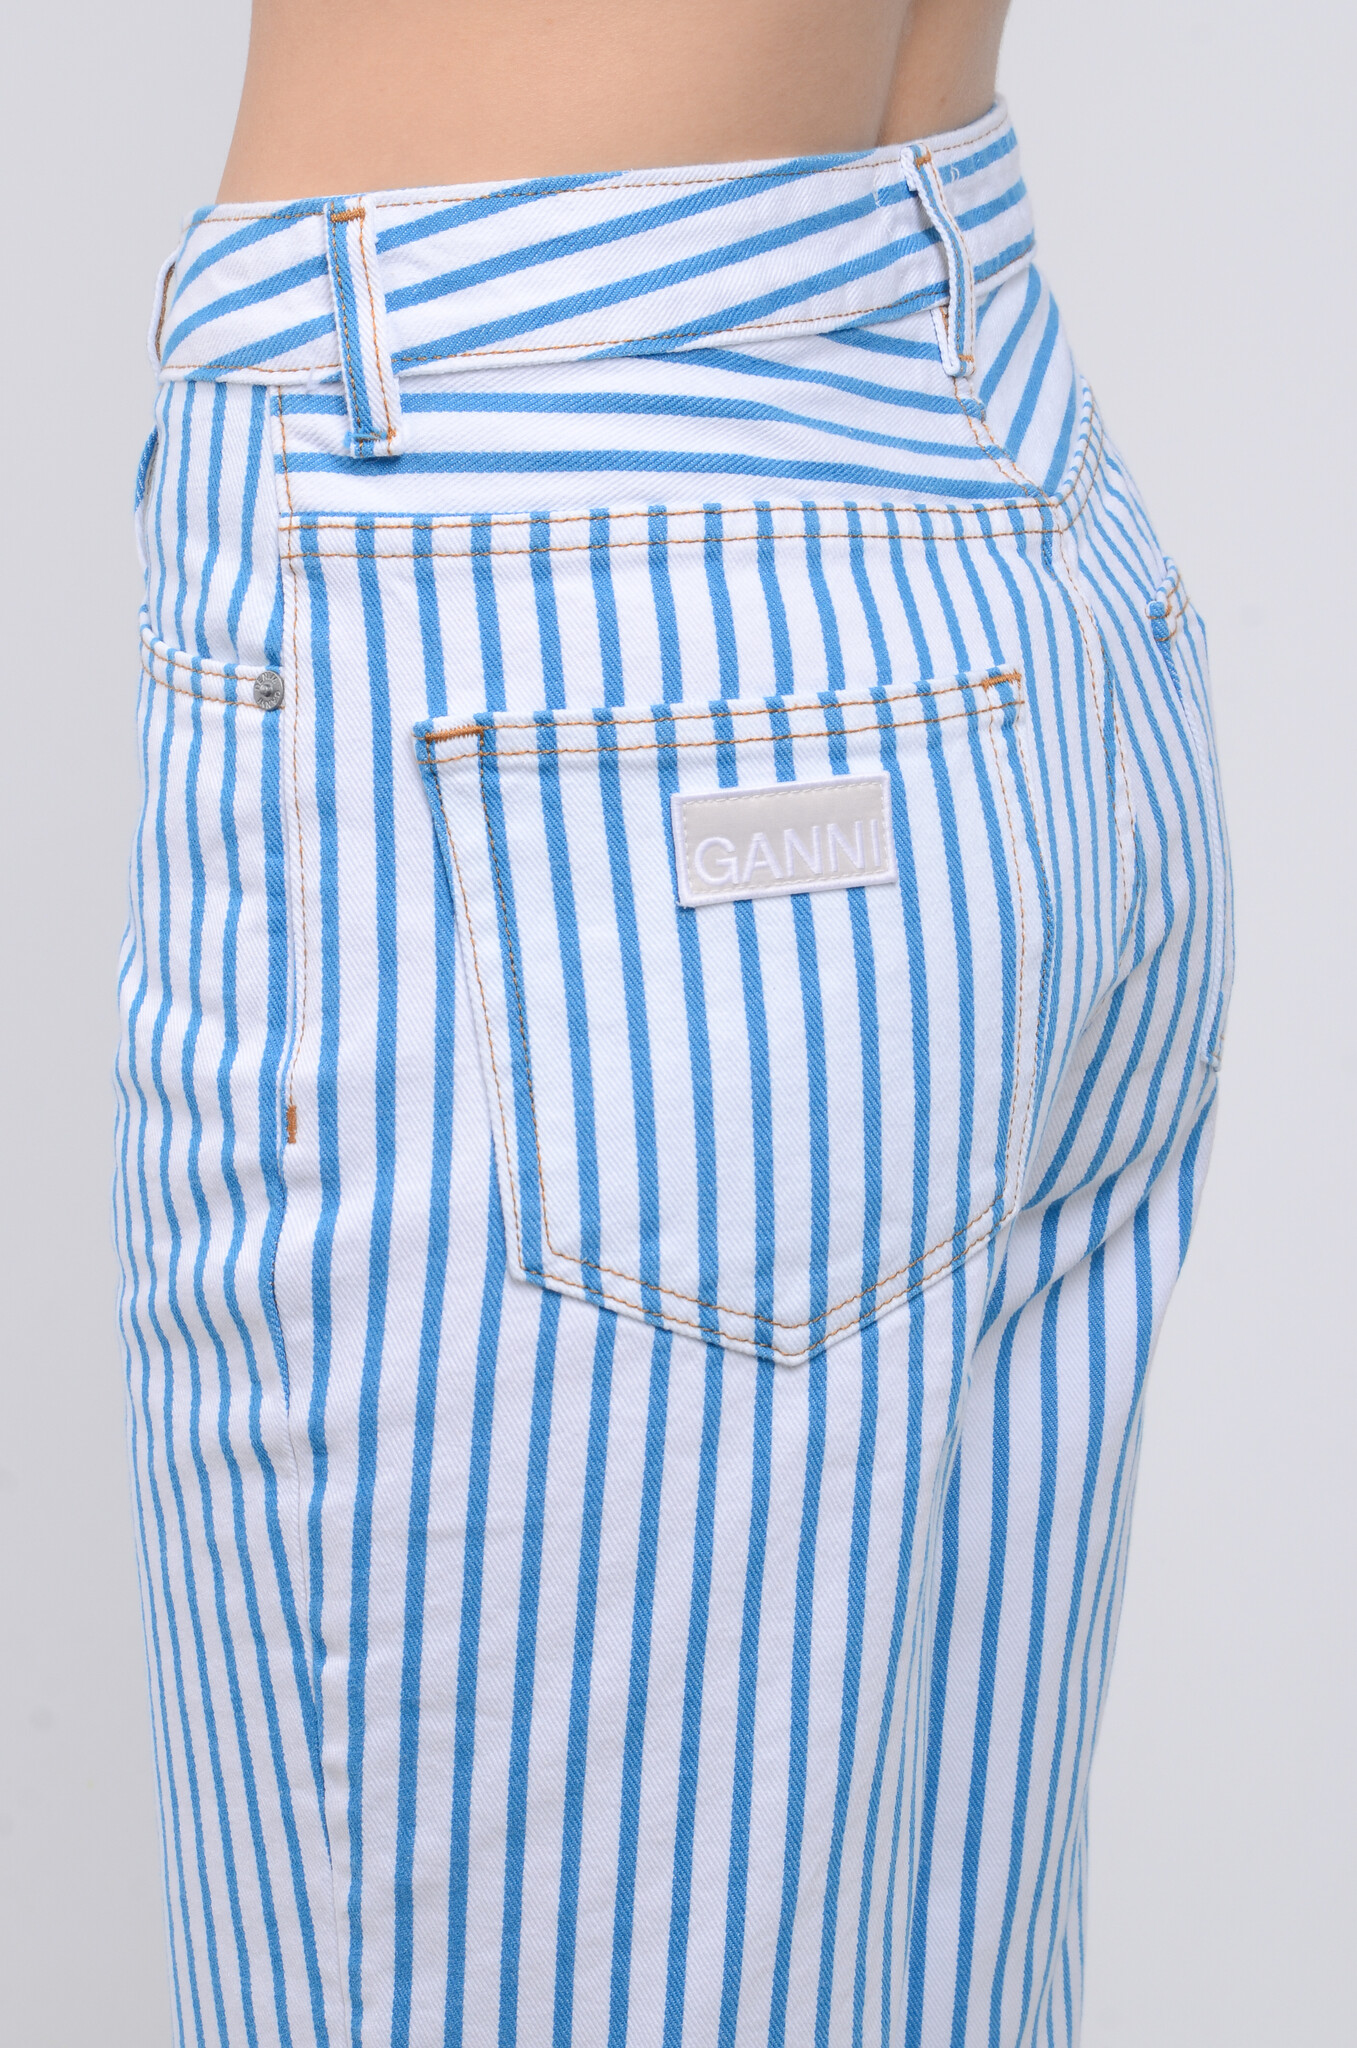 Jeans Ganni Multicolour size 27 US in Denim - Jeans - 33541600